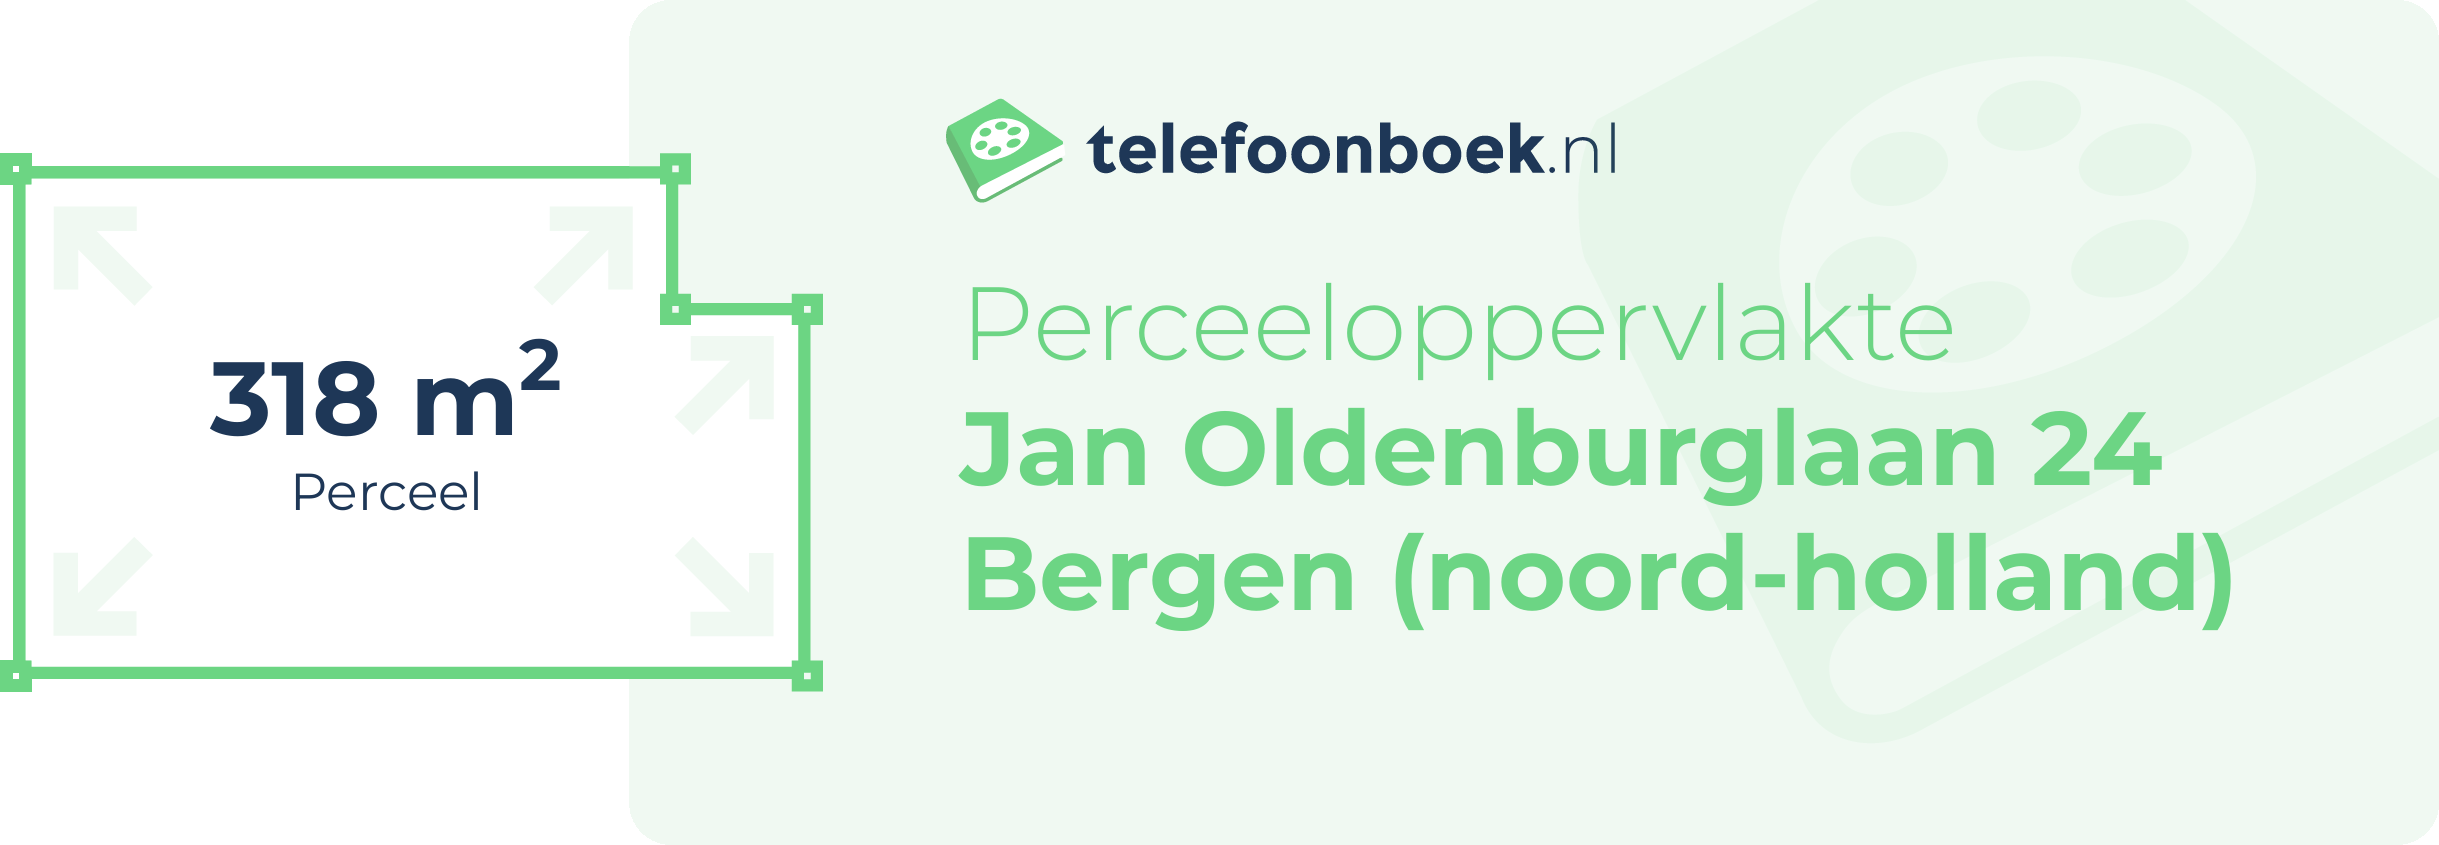 Perceeloppervlakte Jan Oldenburglaan 24 Bergen (Noord-Holland)